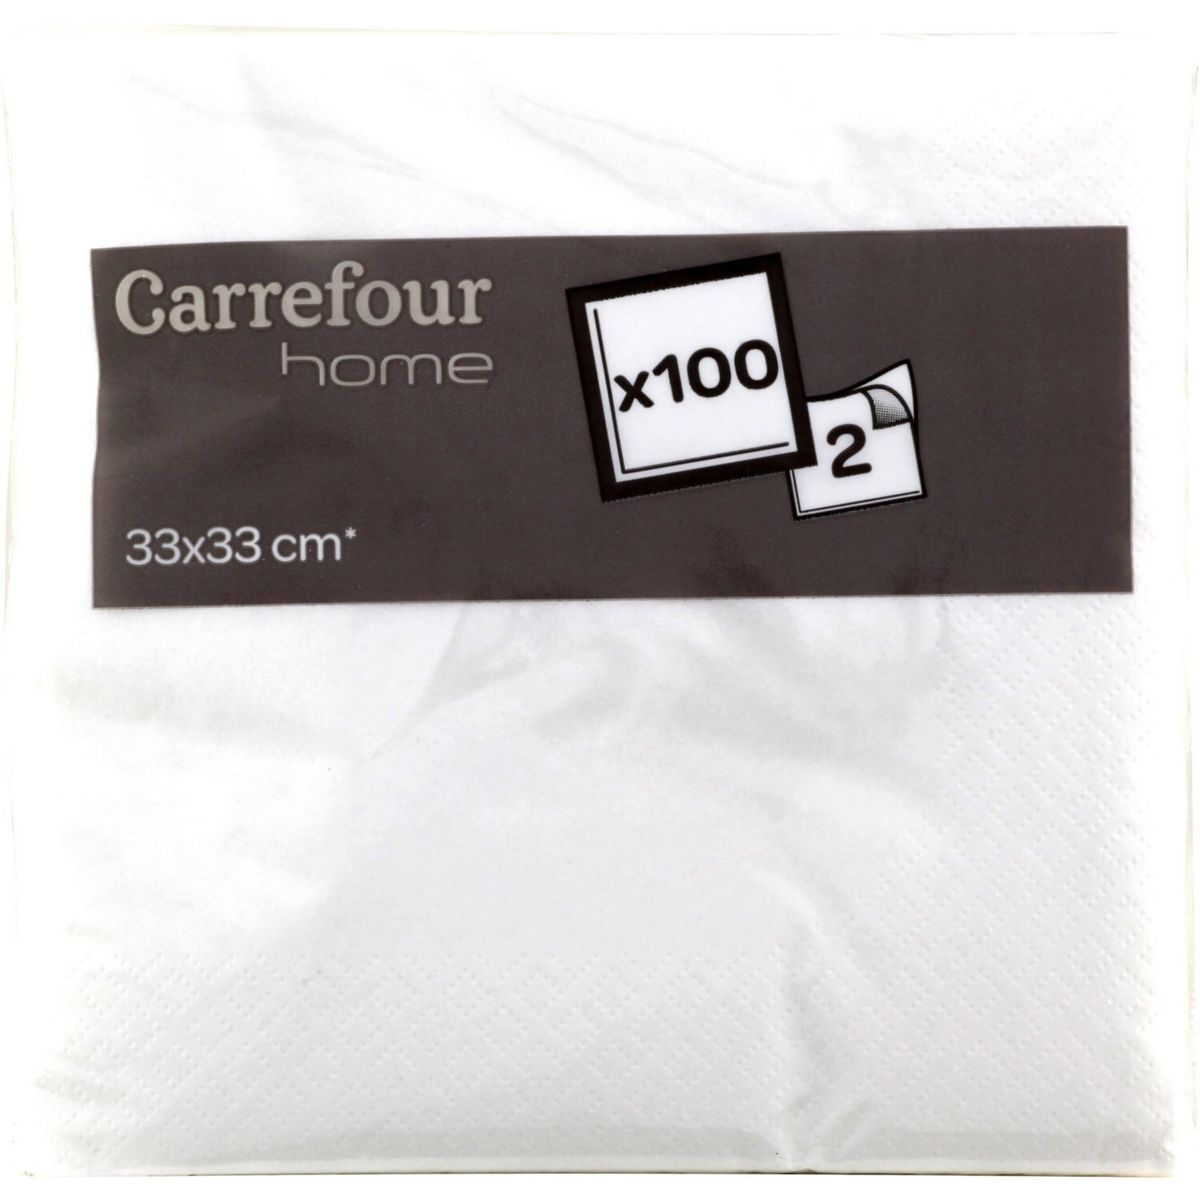 Carrefour Home 100 serviettes 33x33 cm Blanc